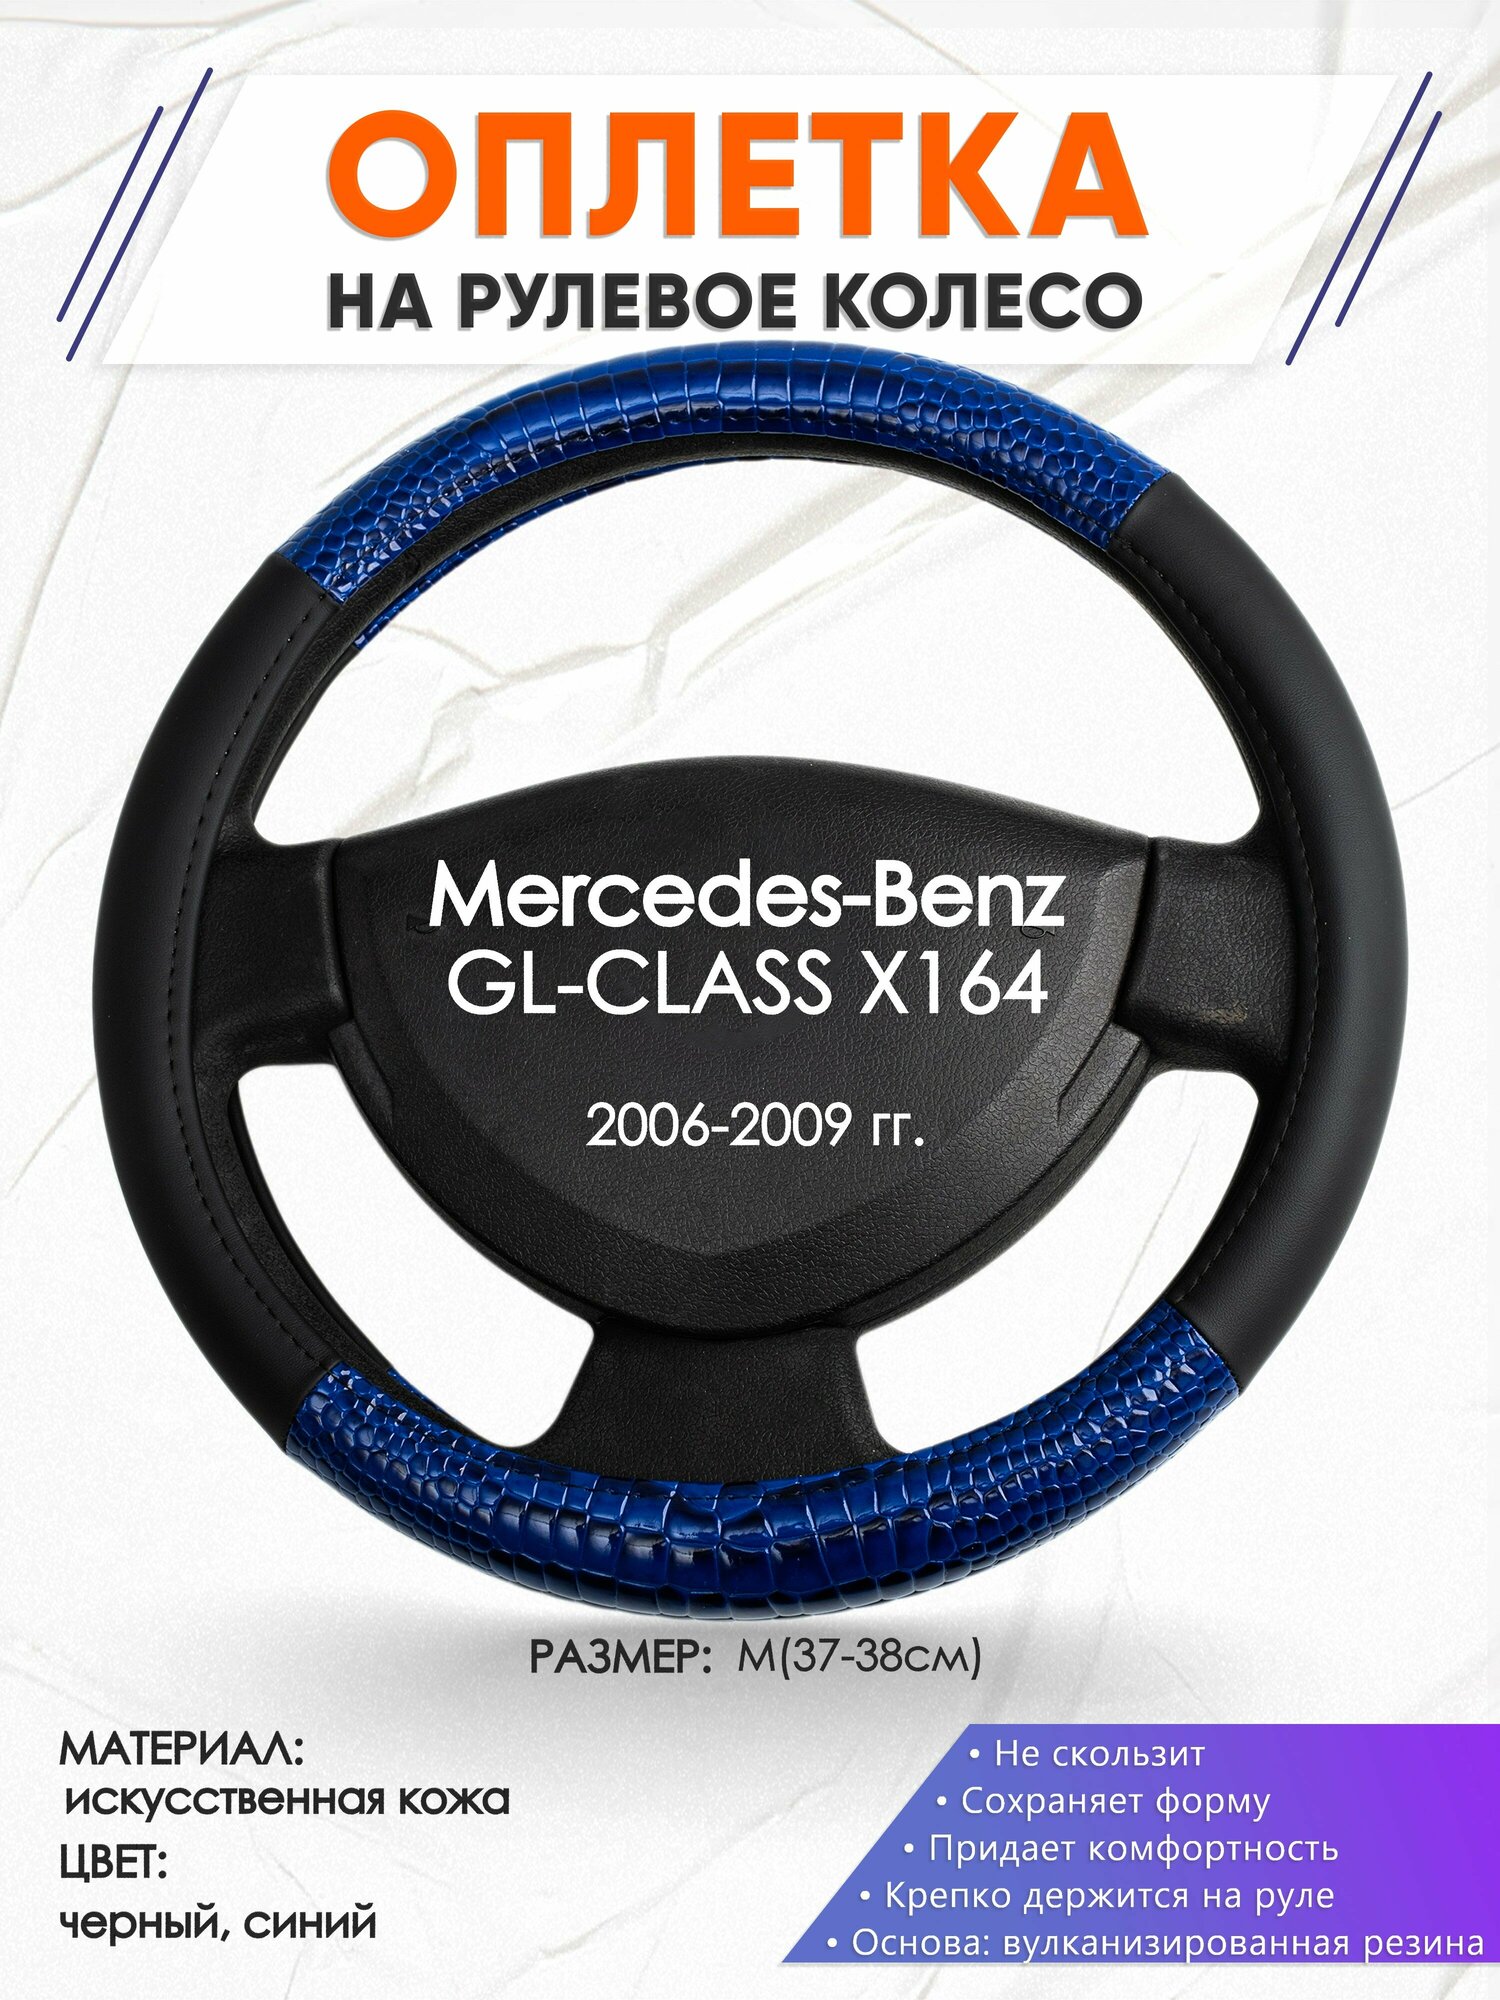 Оплетка наруль для Mercedes-Benz GL-CLASS X164(Мерседес Бенц ГЛ Класс Х164) 2006-2009 годов выпуска, размер M(37-38см), Искусственная кожа 82